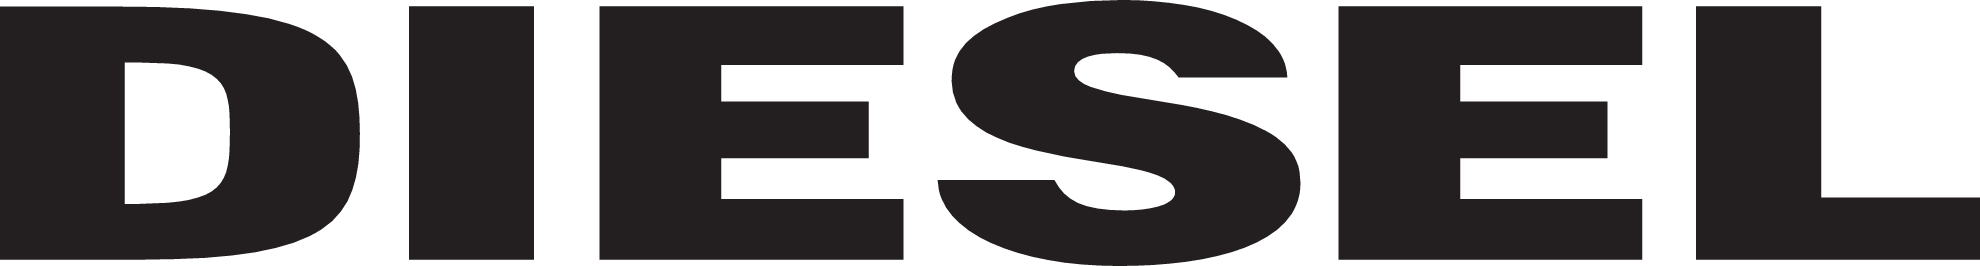 Logo de Diesel